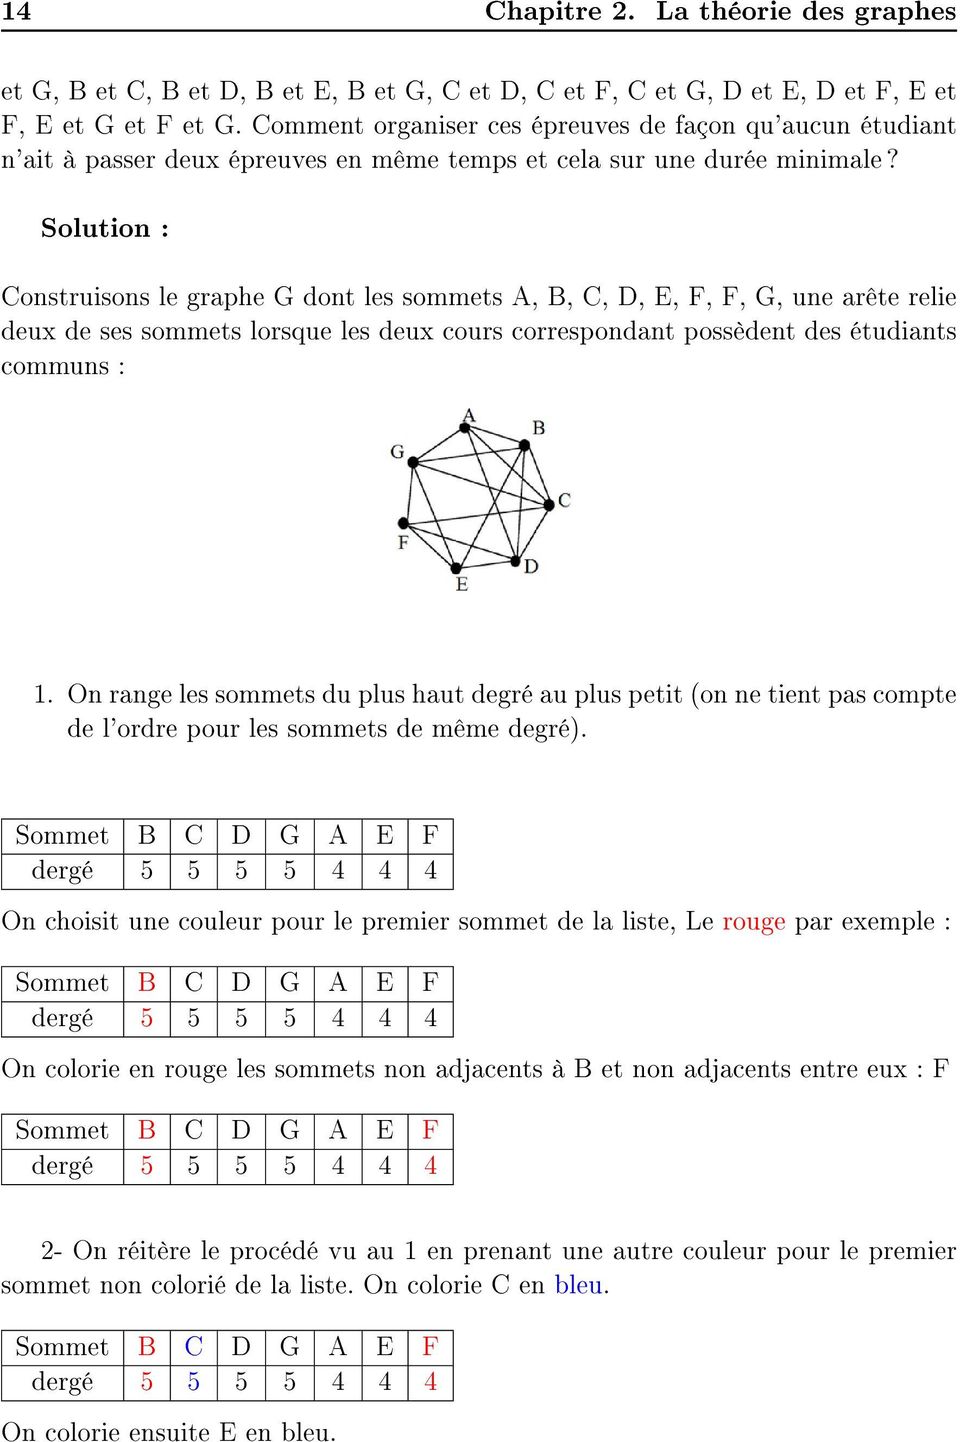 Solution : Construisons le graphe G dont les sommets A, B, C, D, E, F, F, G, une arête relie deux de ses sommets lorsque les deux cours correspondant possèdent des étudiants communs : 1.